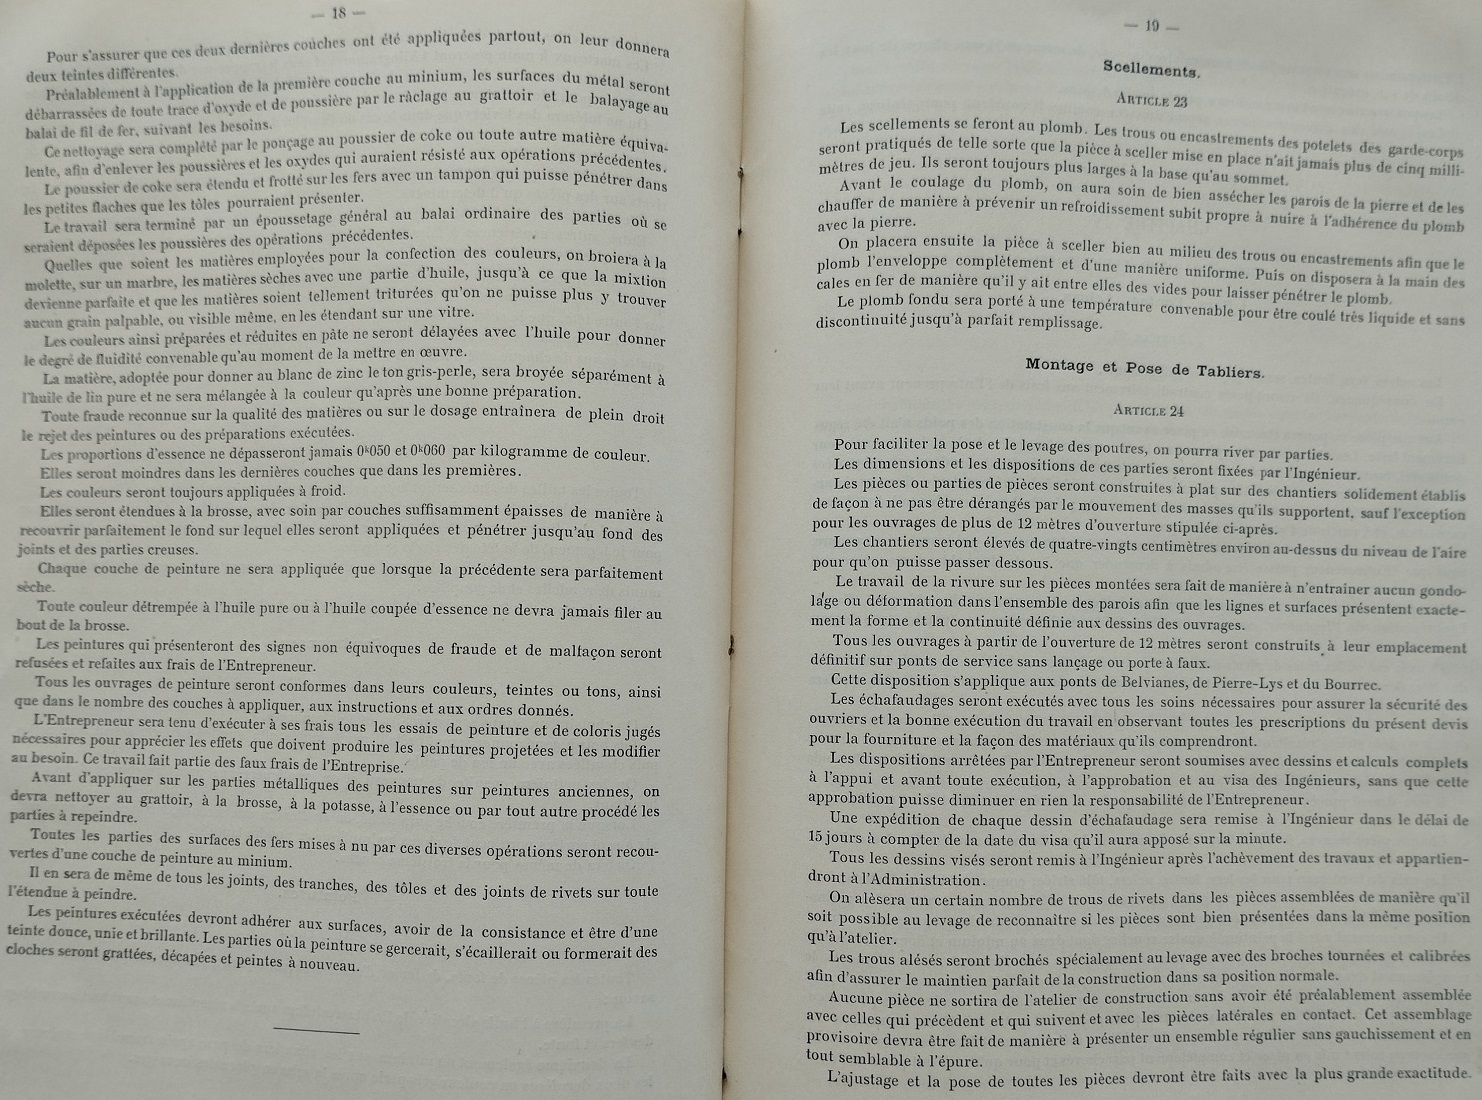 Devis et cahier des charges pour les tabliers et gardes-corps des grands ouvrages métaliques du 14 mai 1901 - 12